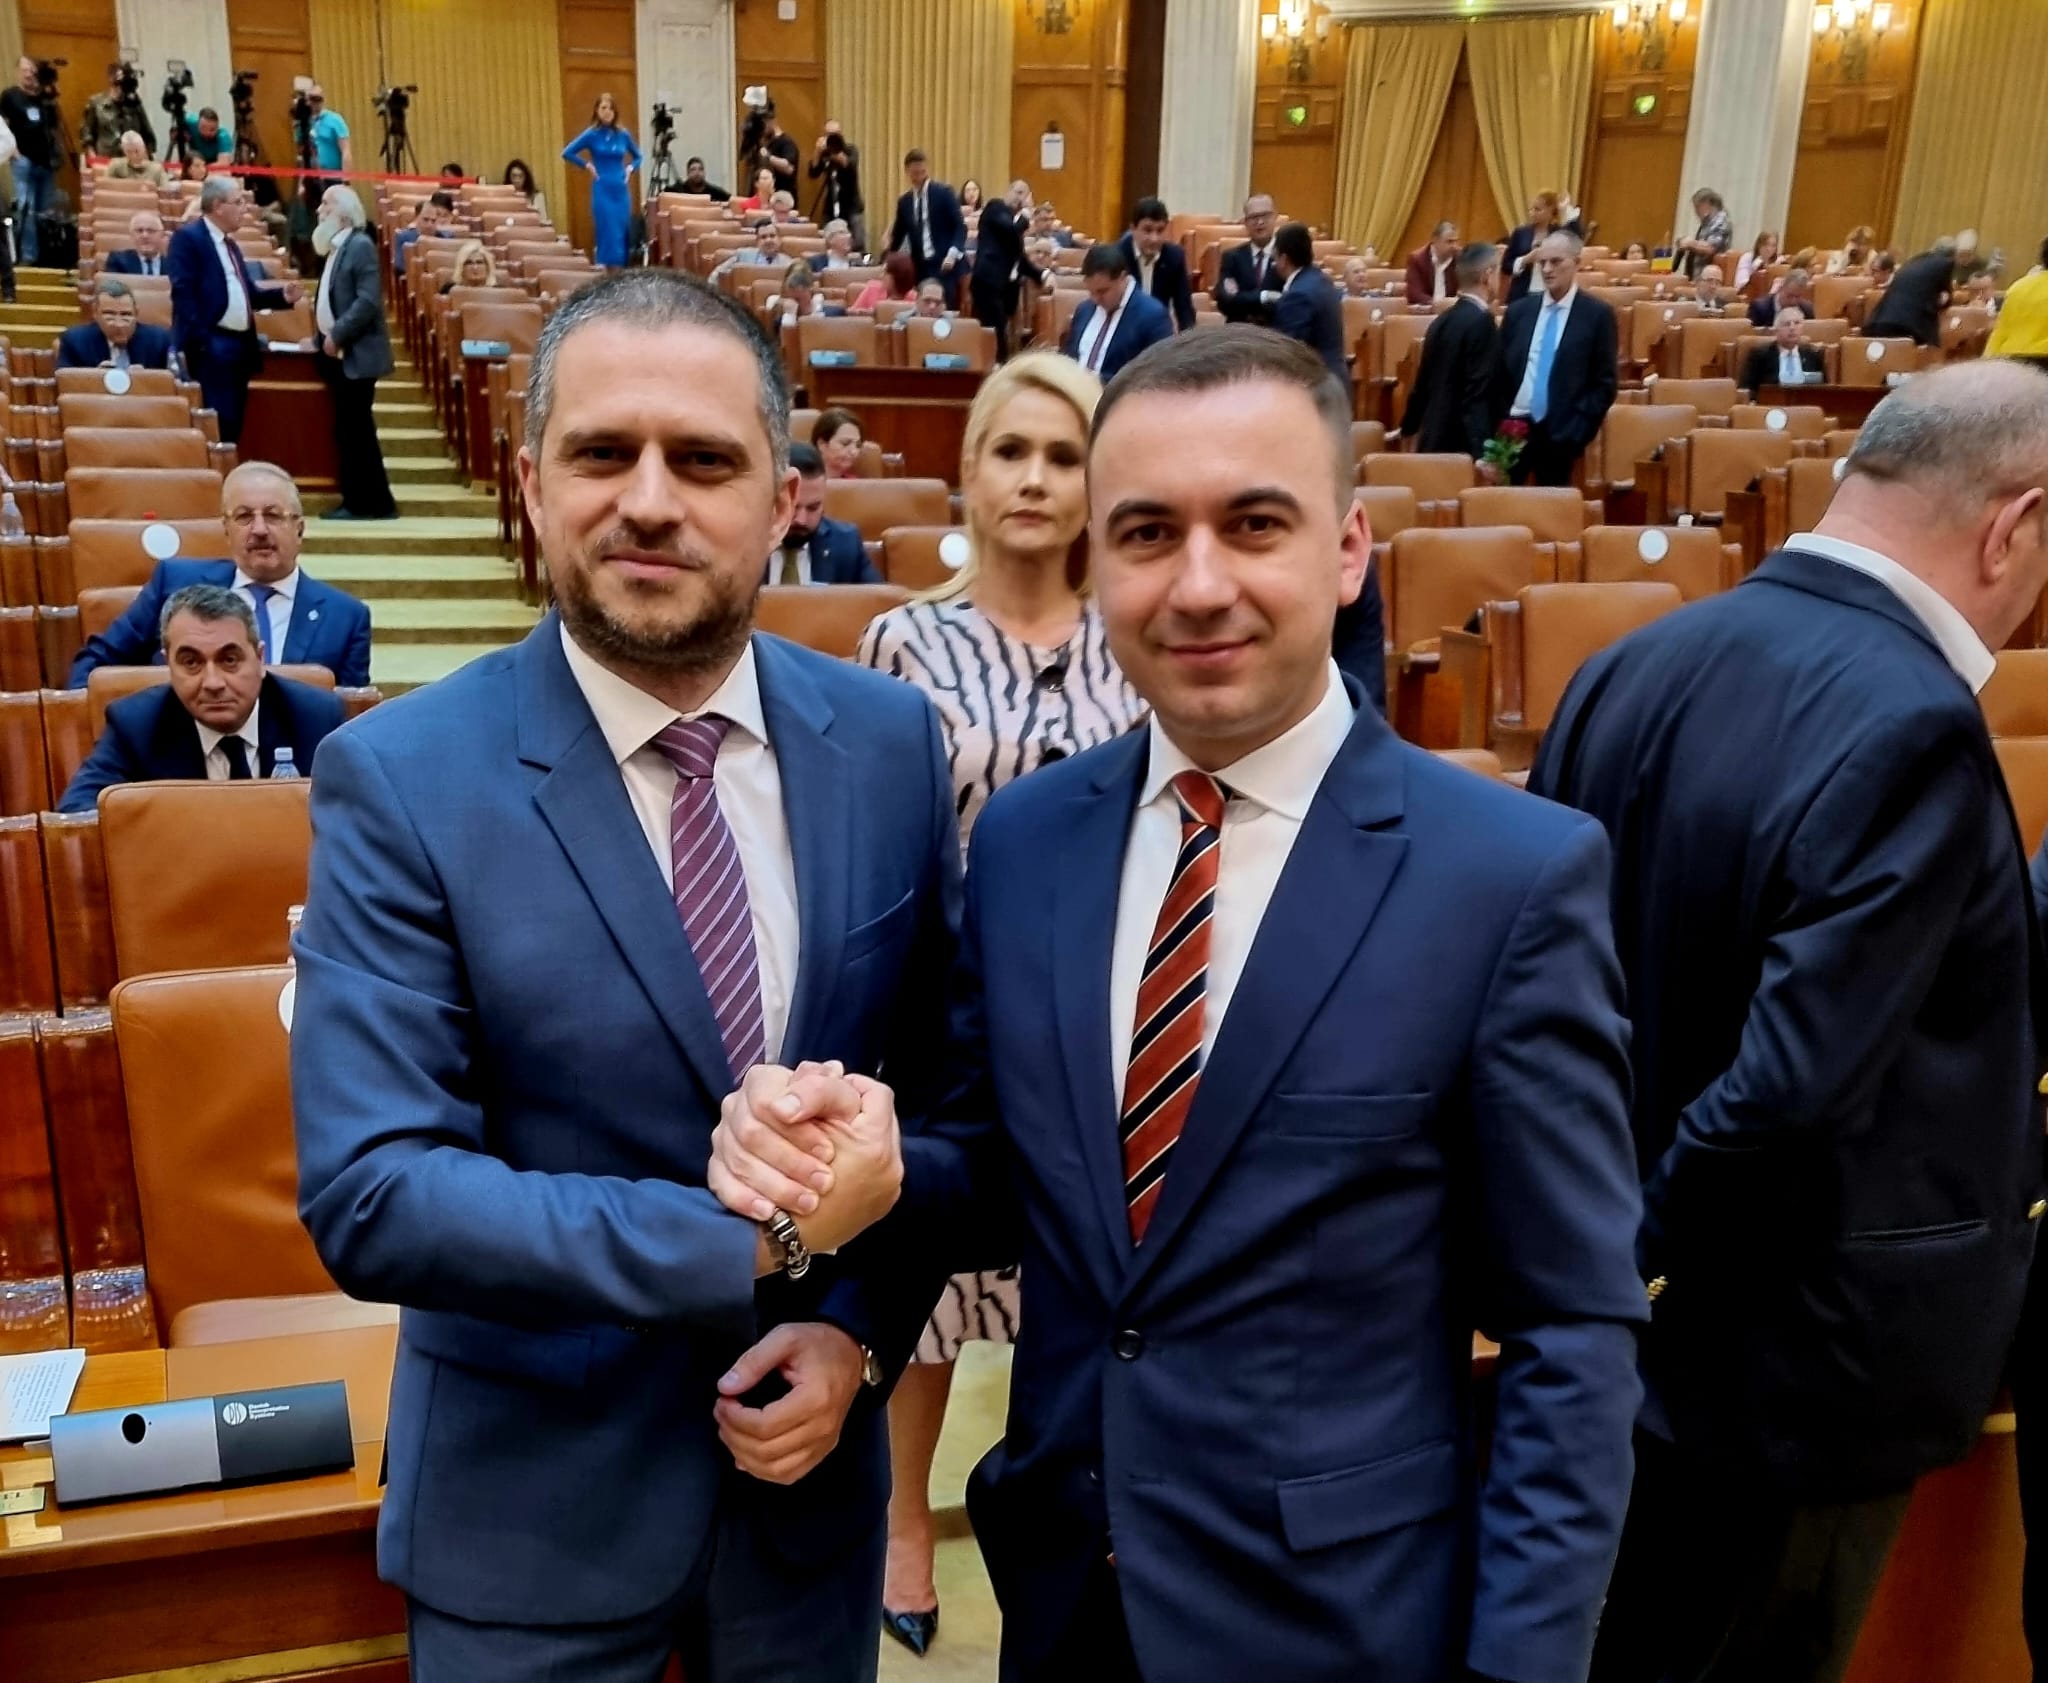 bogdan trif, psd sibiu - ”românia are premier psd, desemnat chiar de președintele klaus iohannis” (cp)